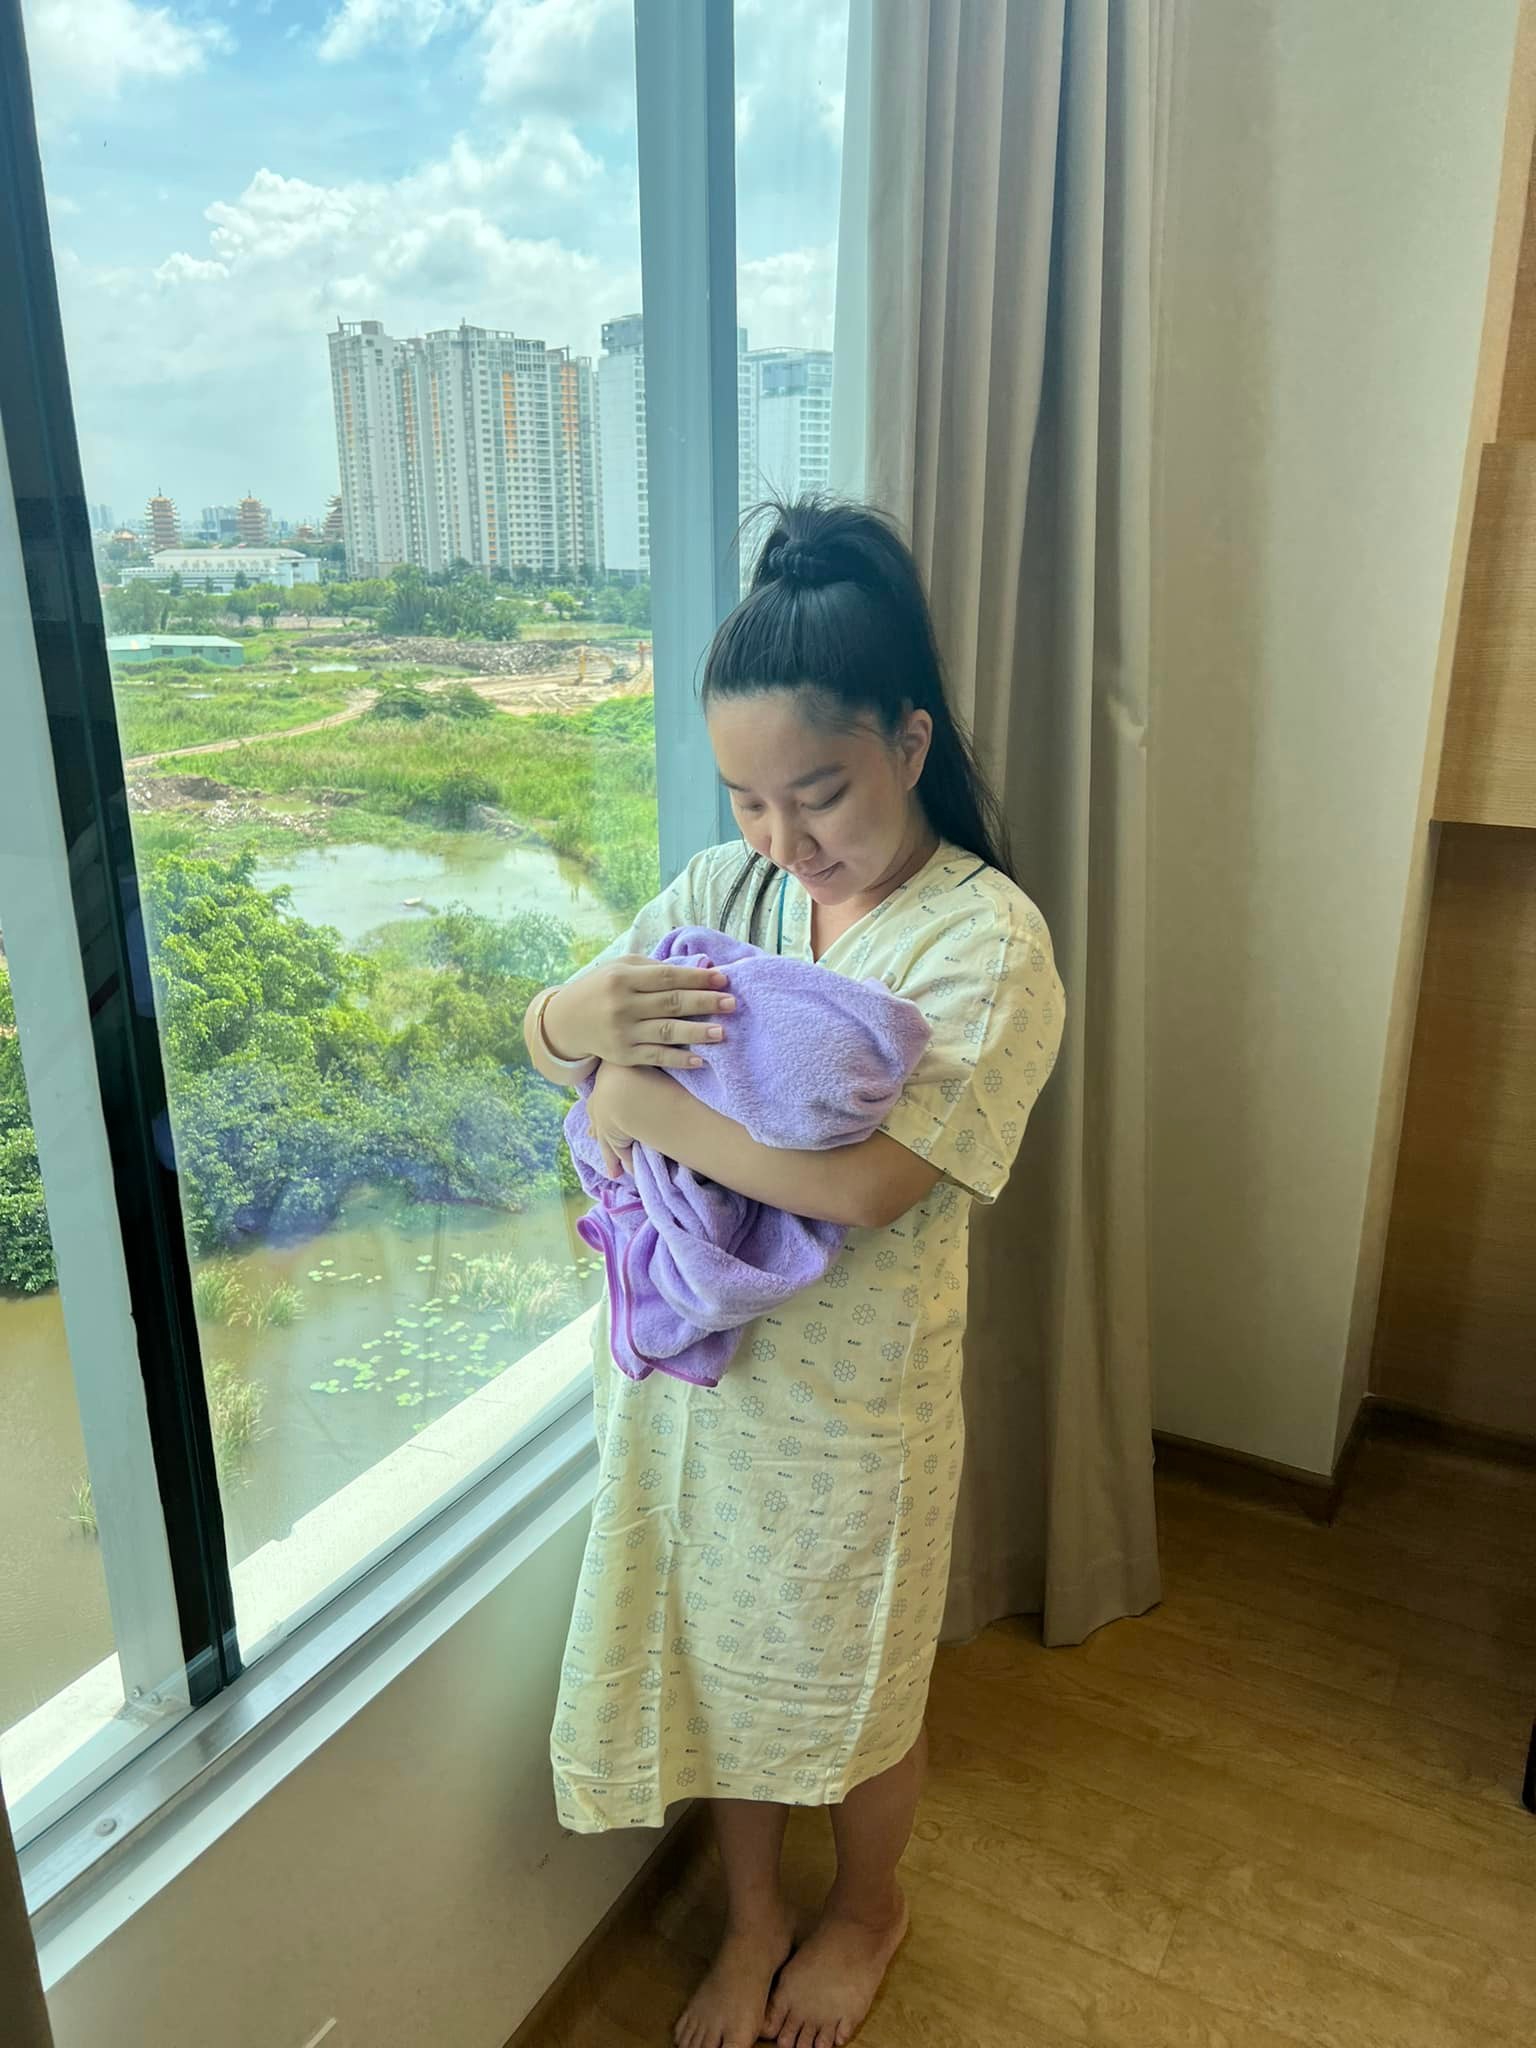 Trước chia sẻ thú vị này của bà xã Lê Dương Bảo Lâm, nhiều netizen đã gửi gắm những lời chúc phúc tốt đẹp dành cho cả hai mẹ con nhà Quỳnh Quỳnh